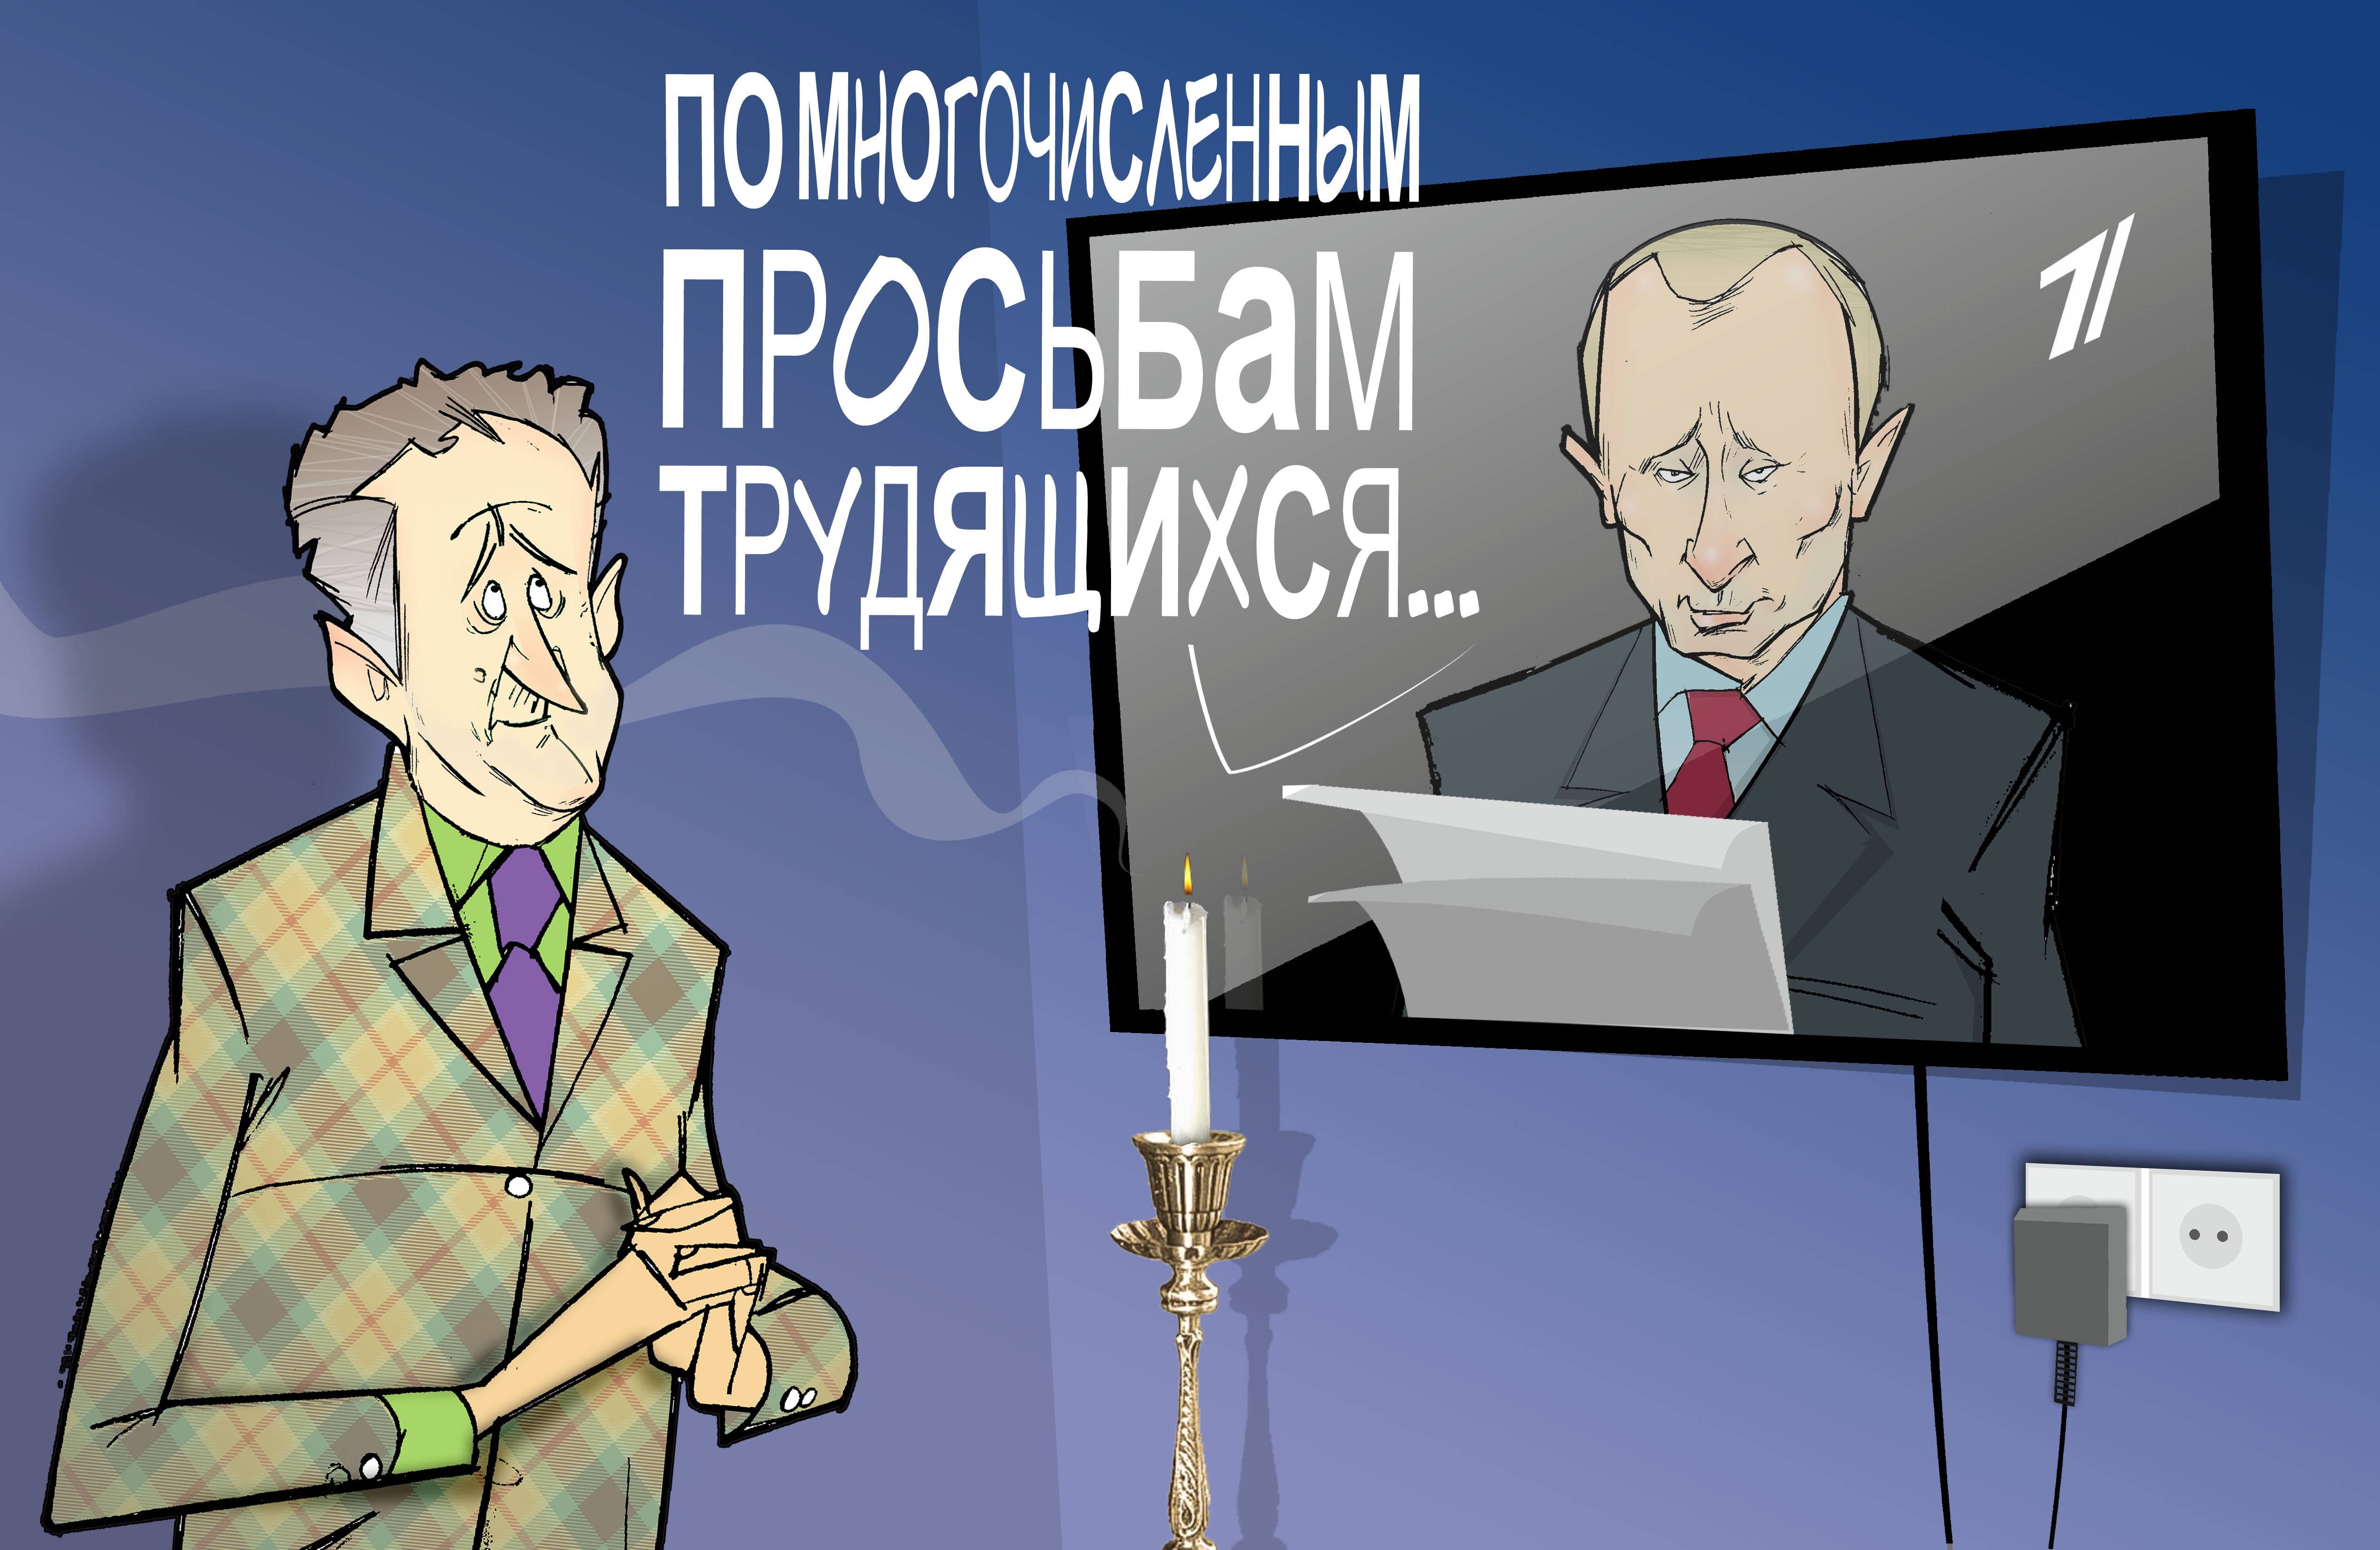 О! Врио, Врио... #Указ #Путин #ПрезидентУР #Волков © Газета "День" 2014